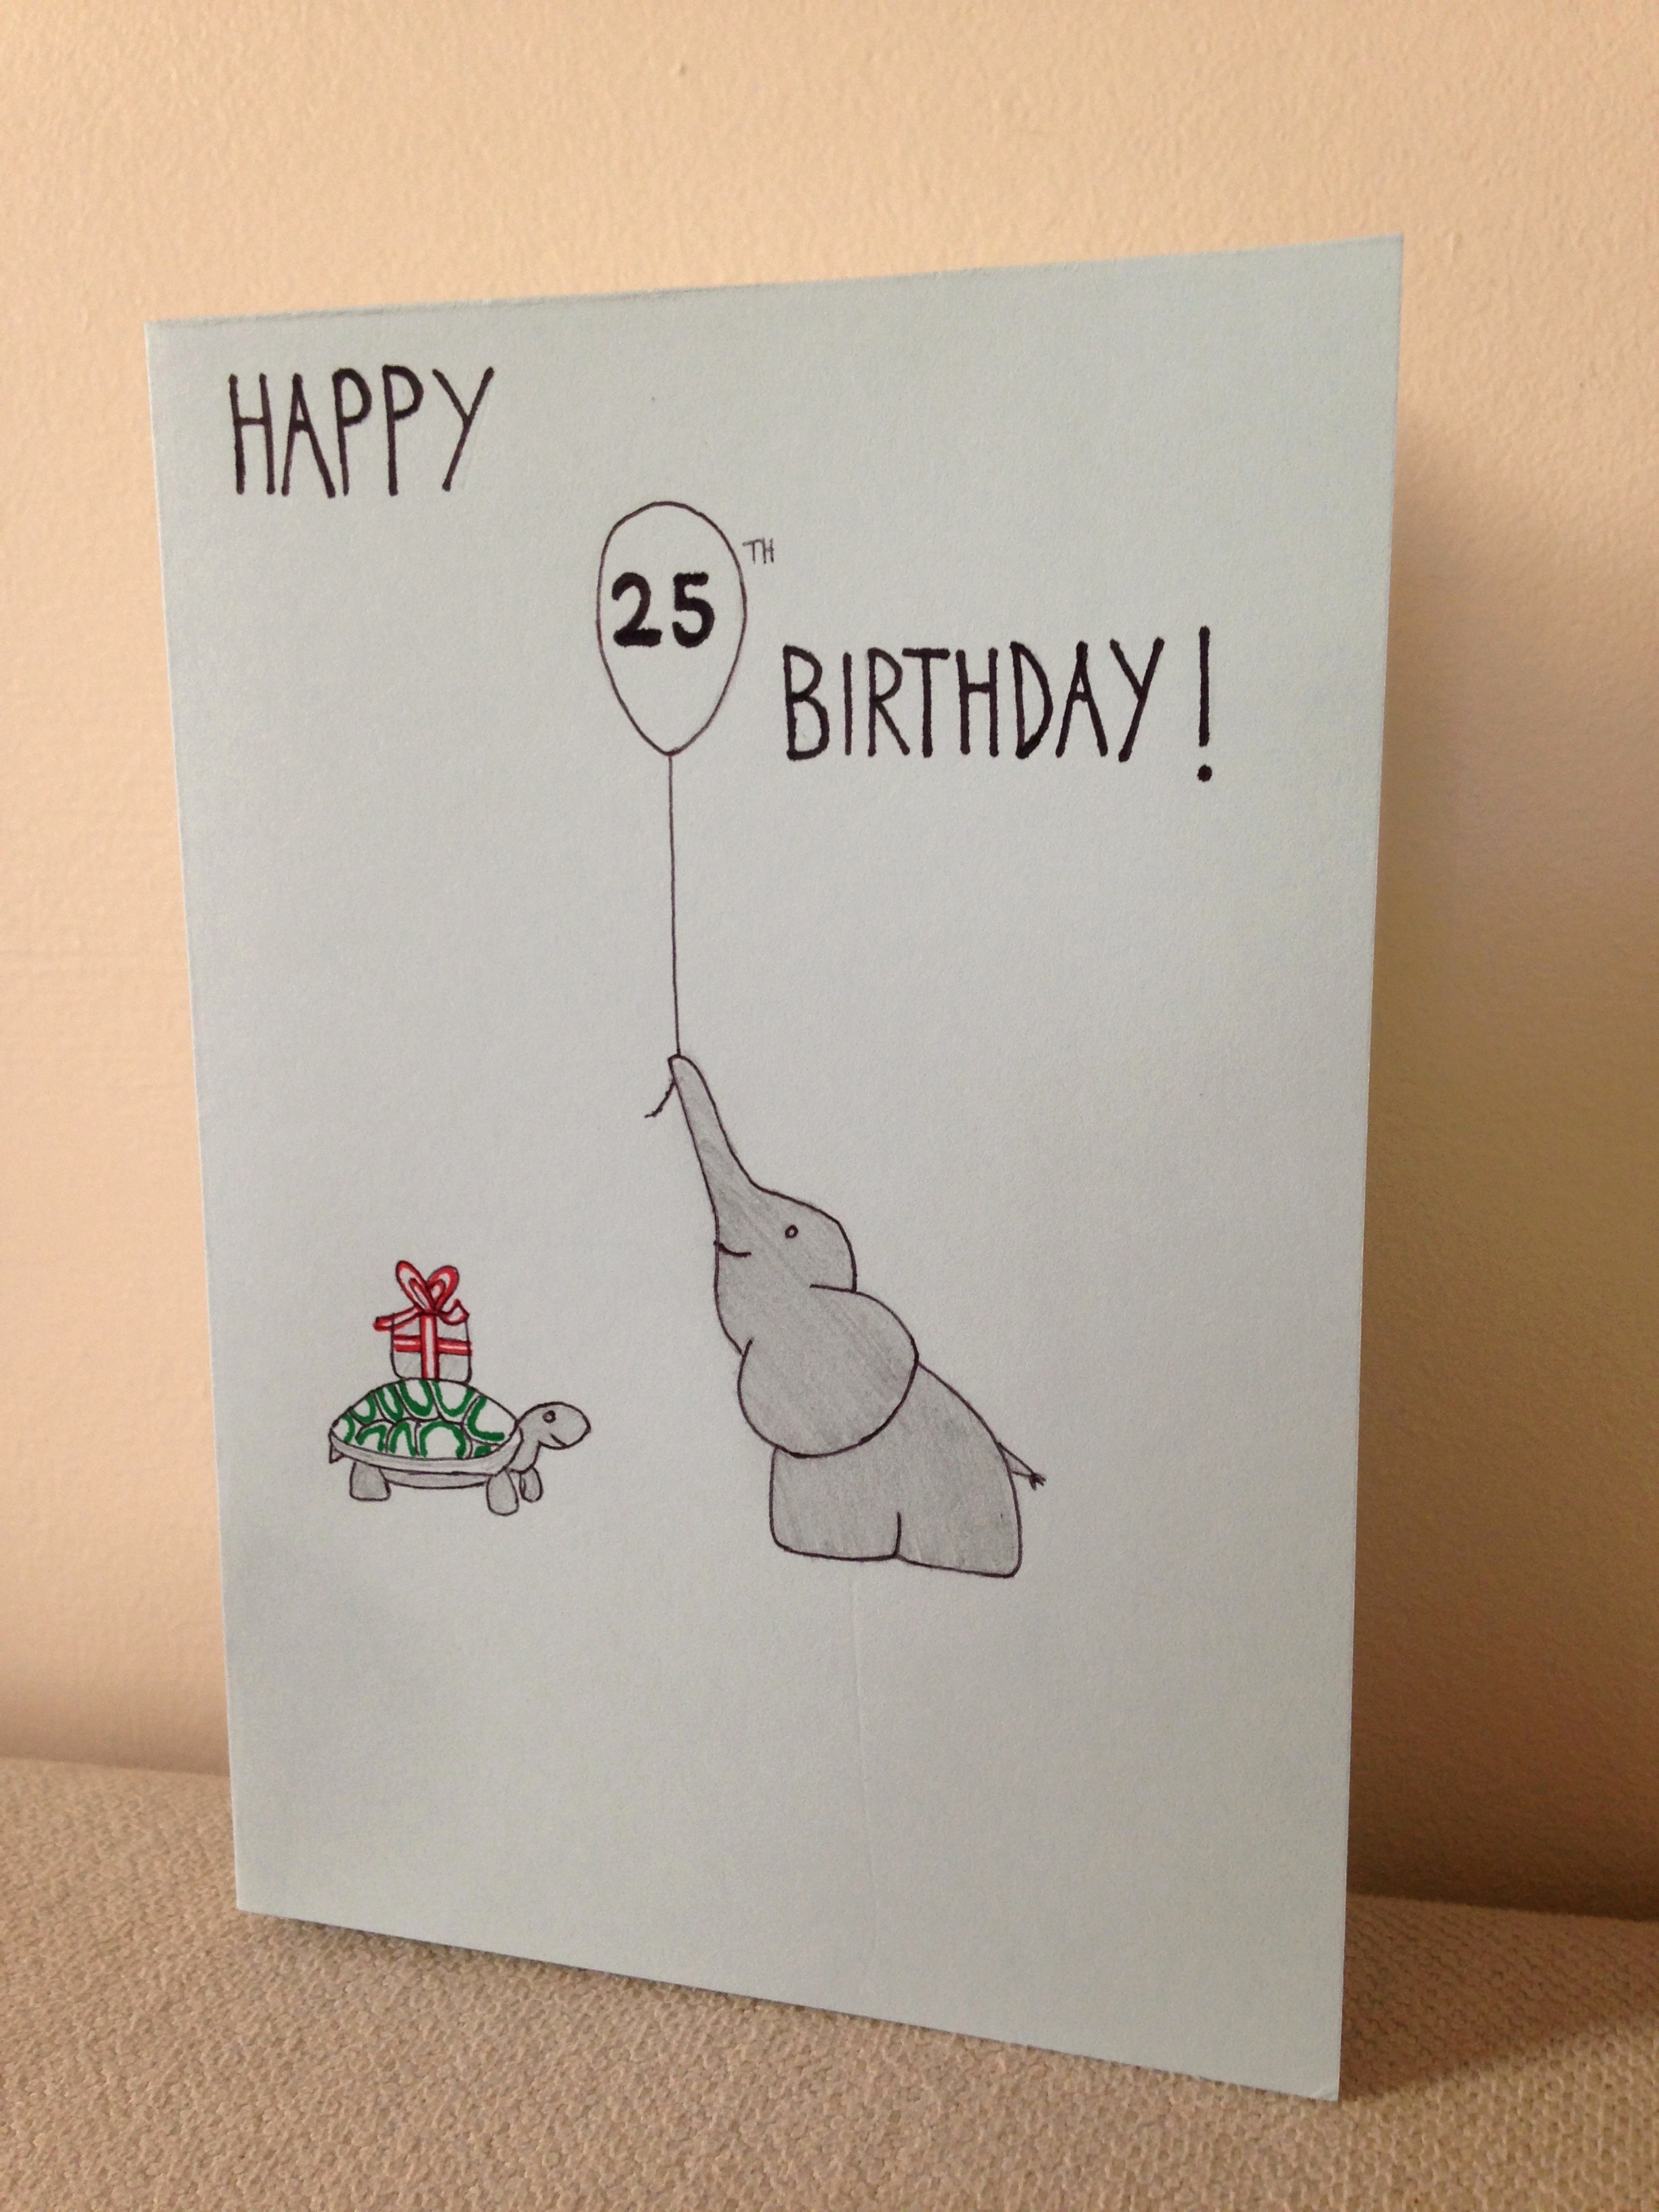 Creative Birthday Card Ideas For Best Friend Birthday Cards Best Friend Funny Unique Creative Birthday Card Ideas